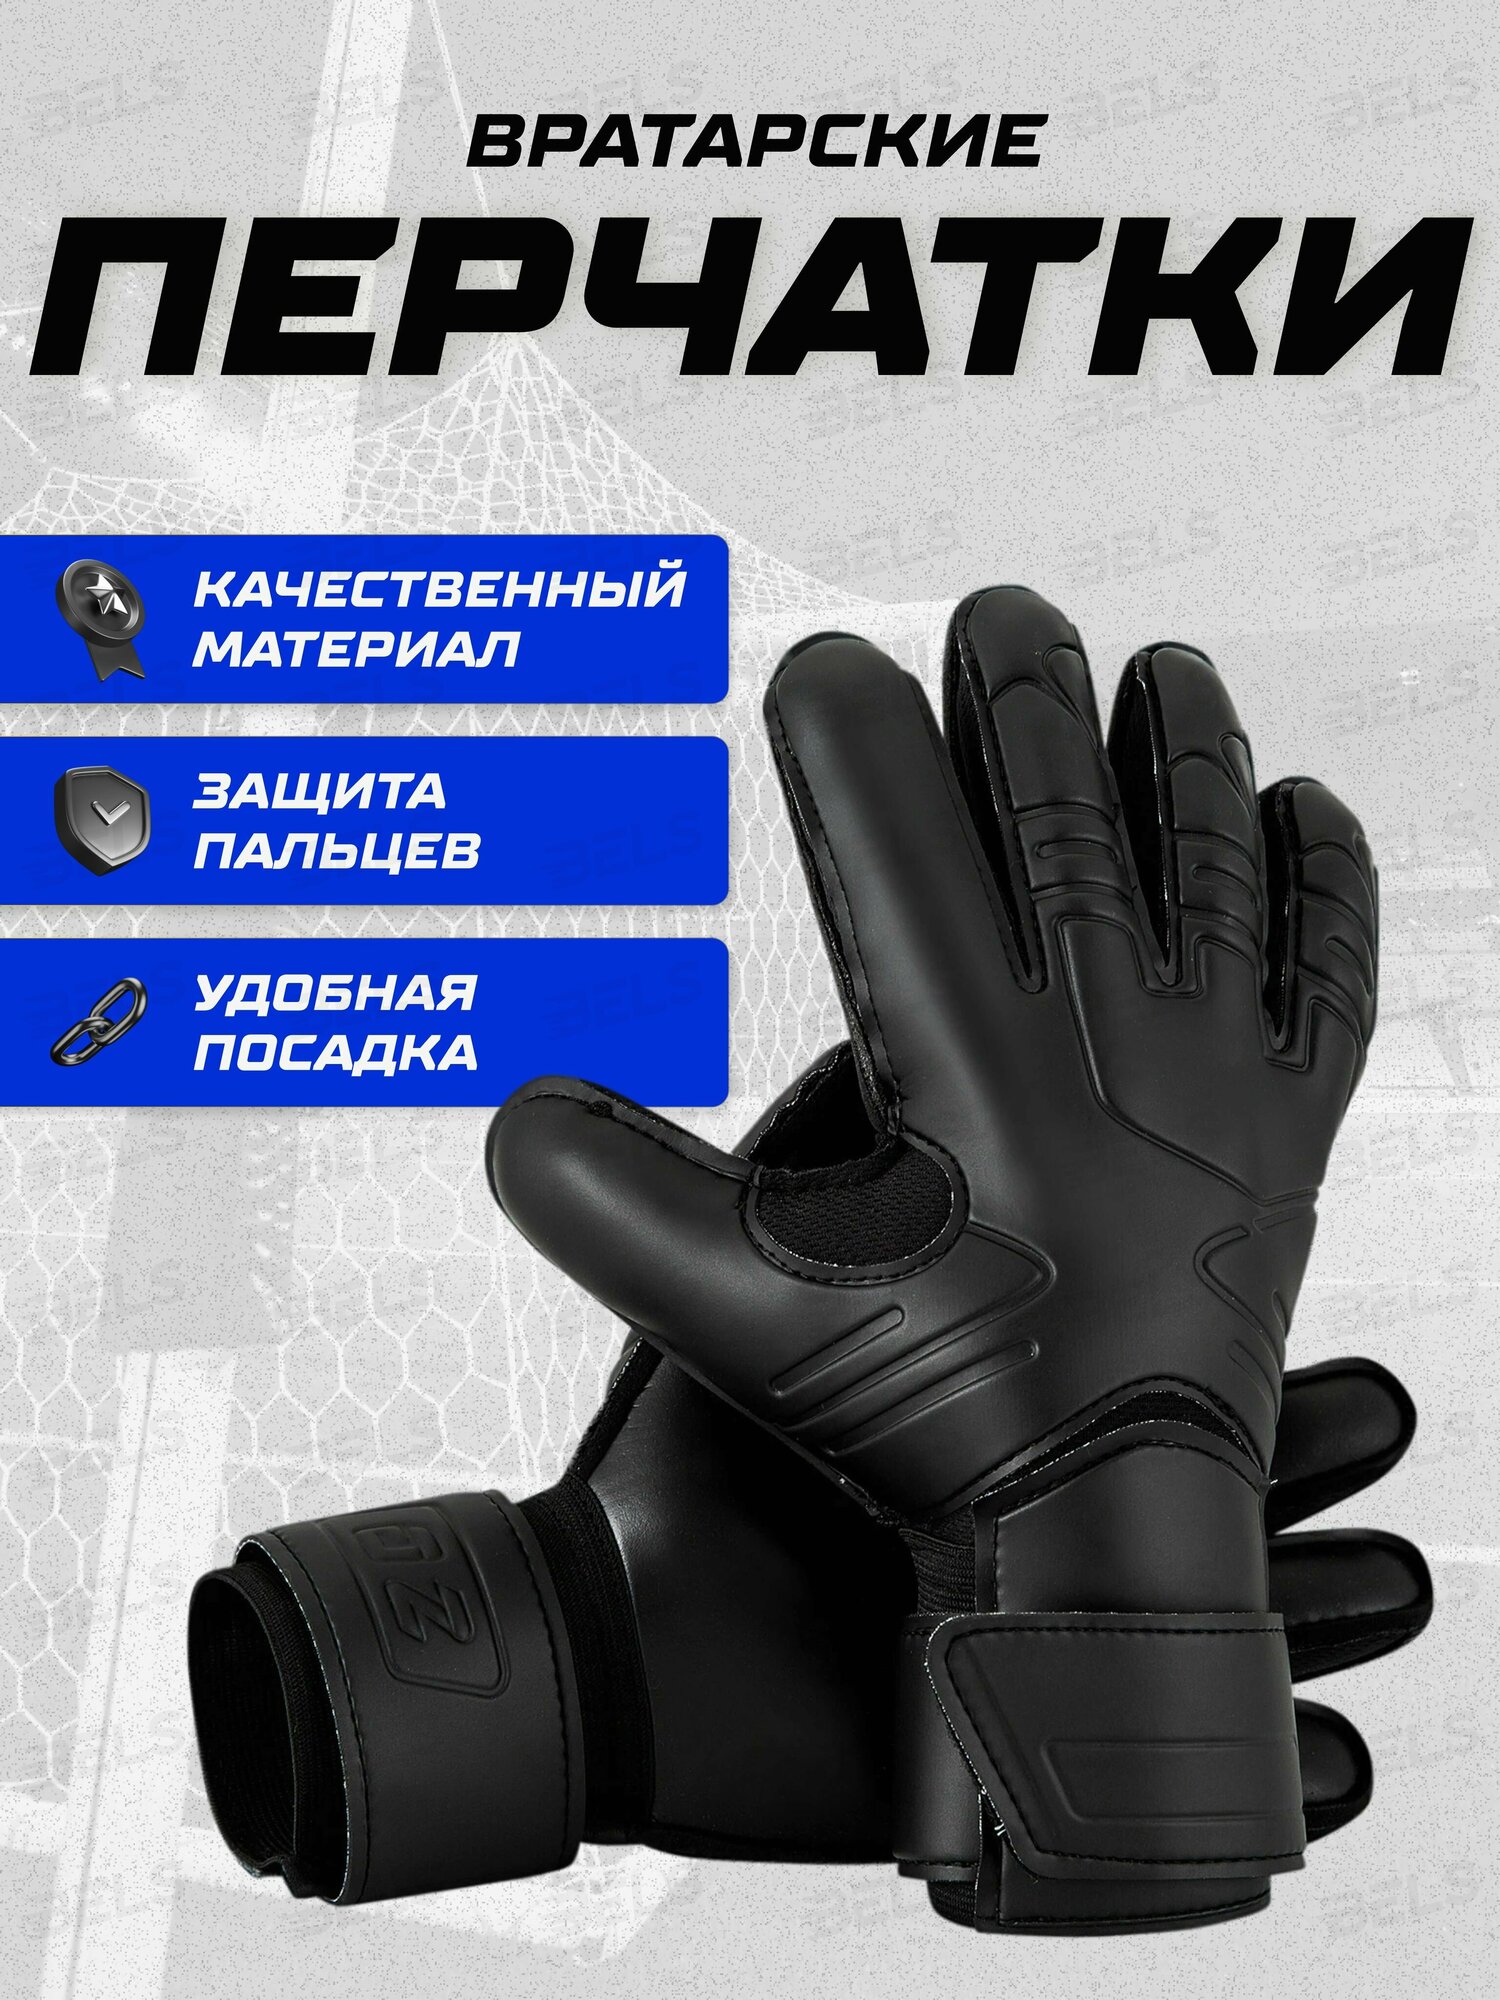 Вратарские перчатки для взрослых и детей, футбольные перчатки, размер 9